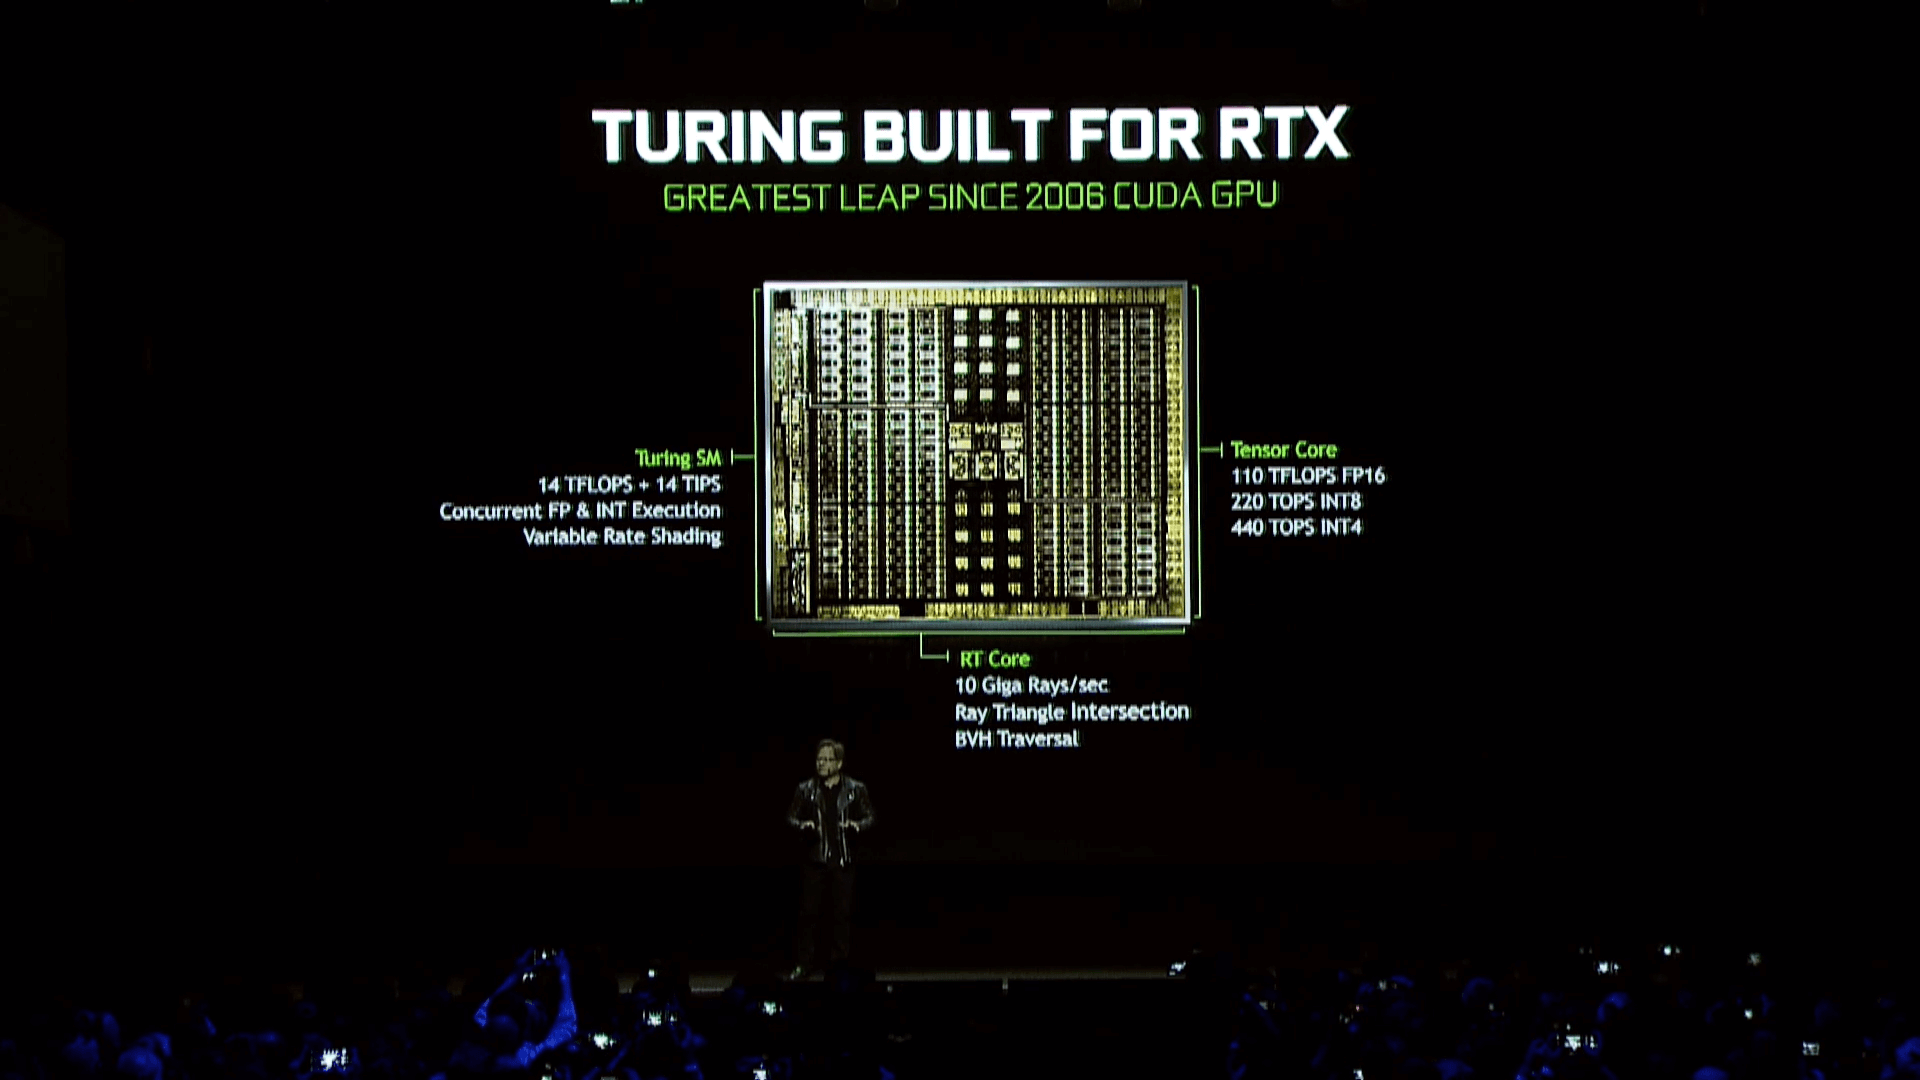 Nvidia anuncia o lançamento das geforce rtx 2070, 2080 e 2080ti. As três placas de vídeo anunciadas pela nvidia representam o que há de melhor para o público gamer no momento.